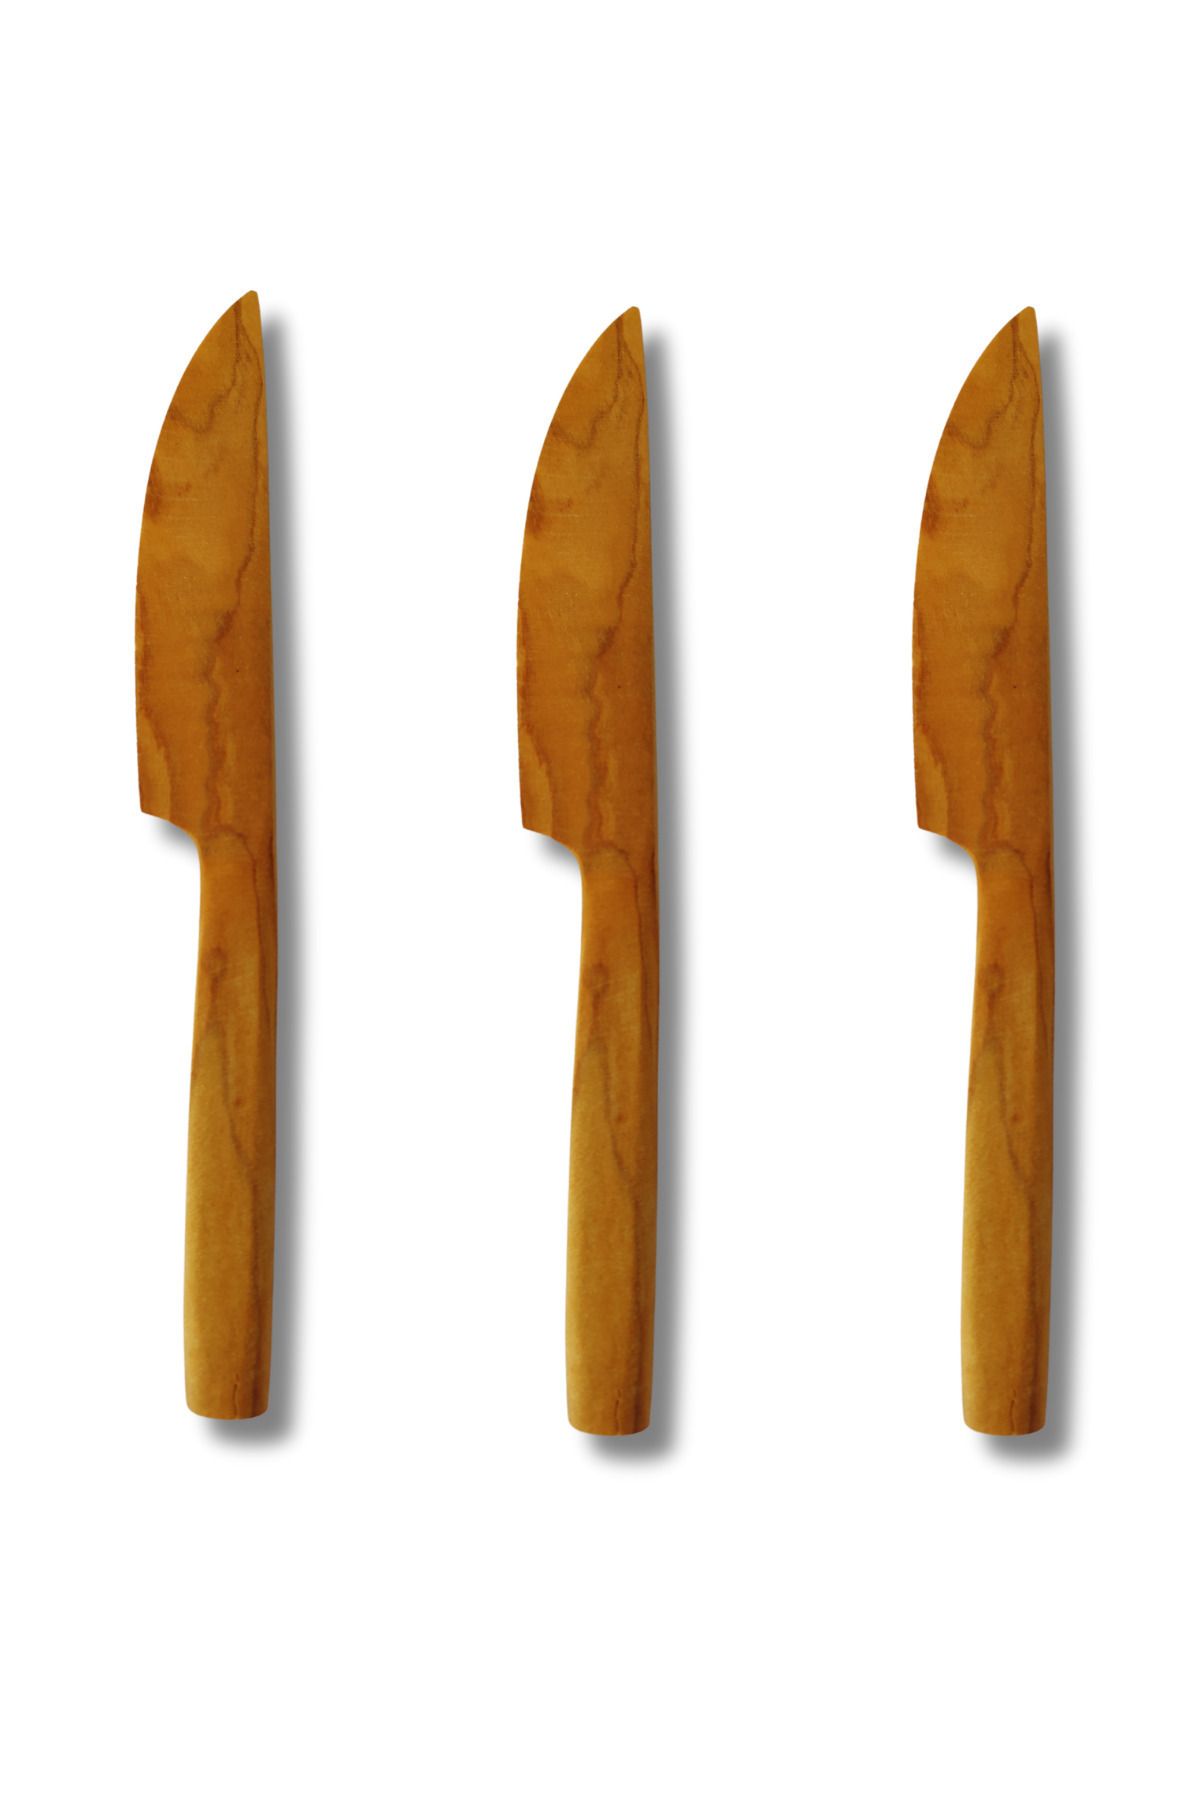 BEFGROUP Kahvaltı Takımı Kahvaltı Bıçağı Ahşap Bıçak 3'lü Set Zeytin Ağacı Mutfak Gereçleri Kahvaltı Seti